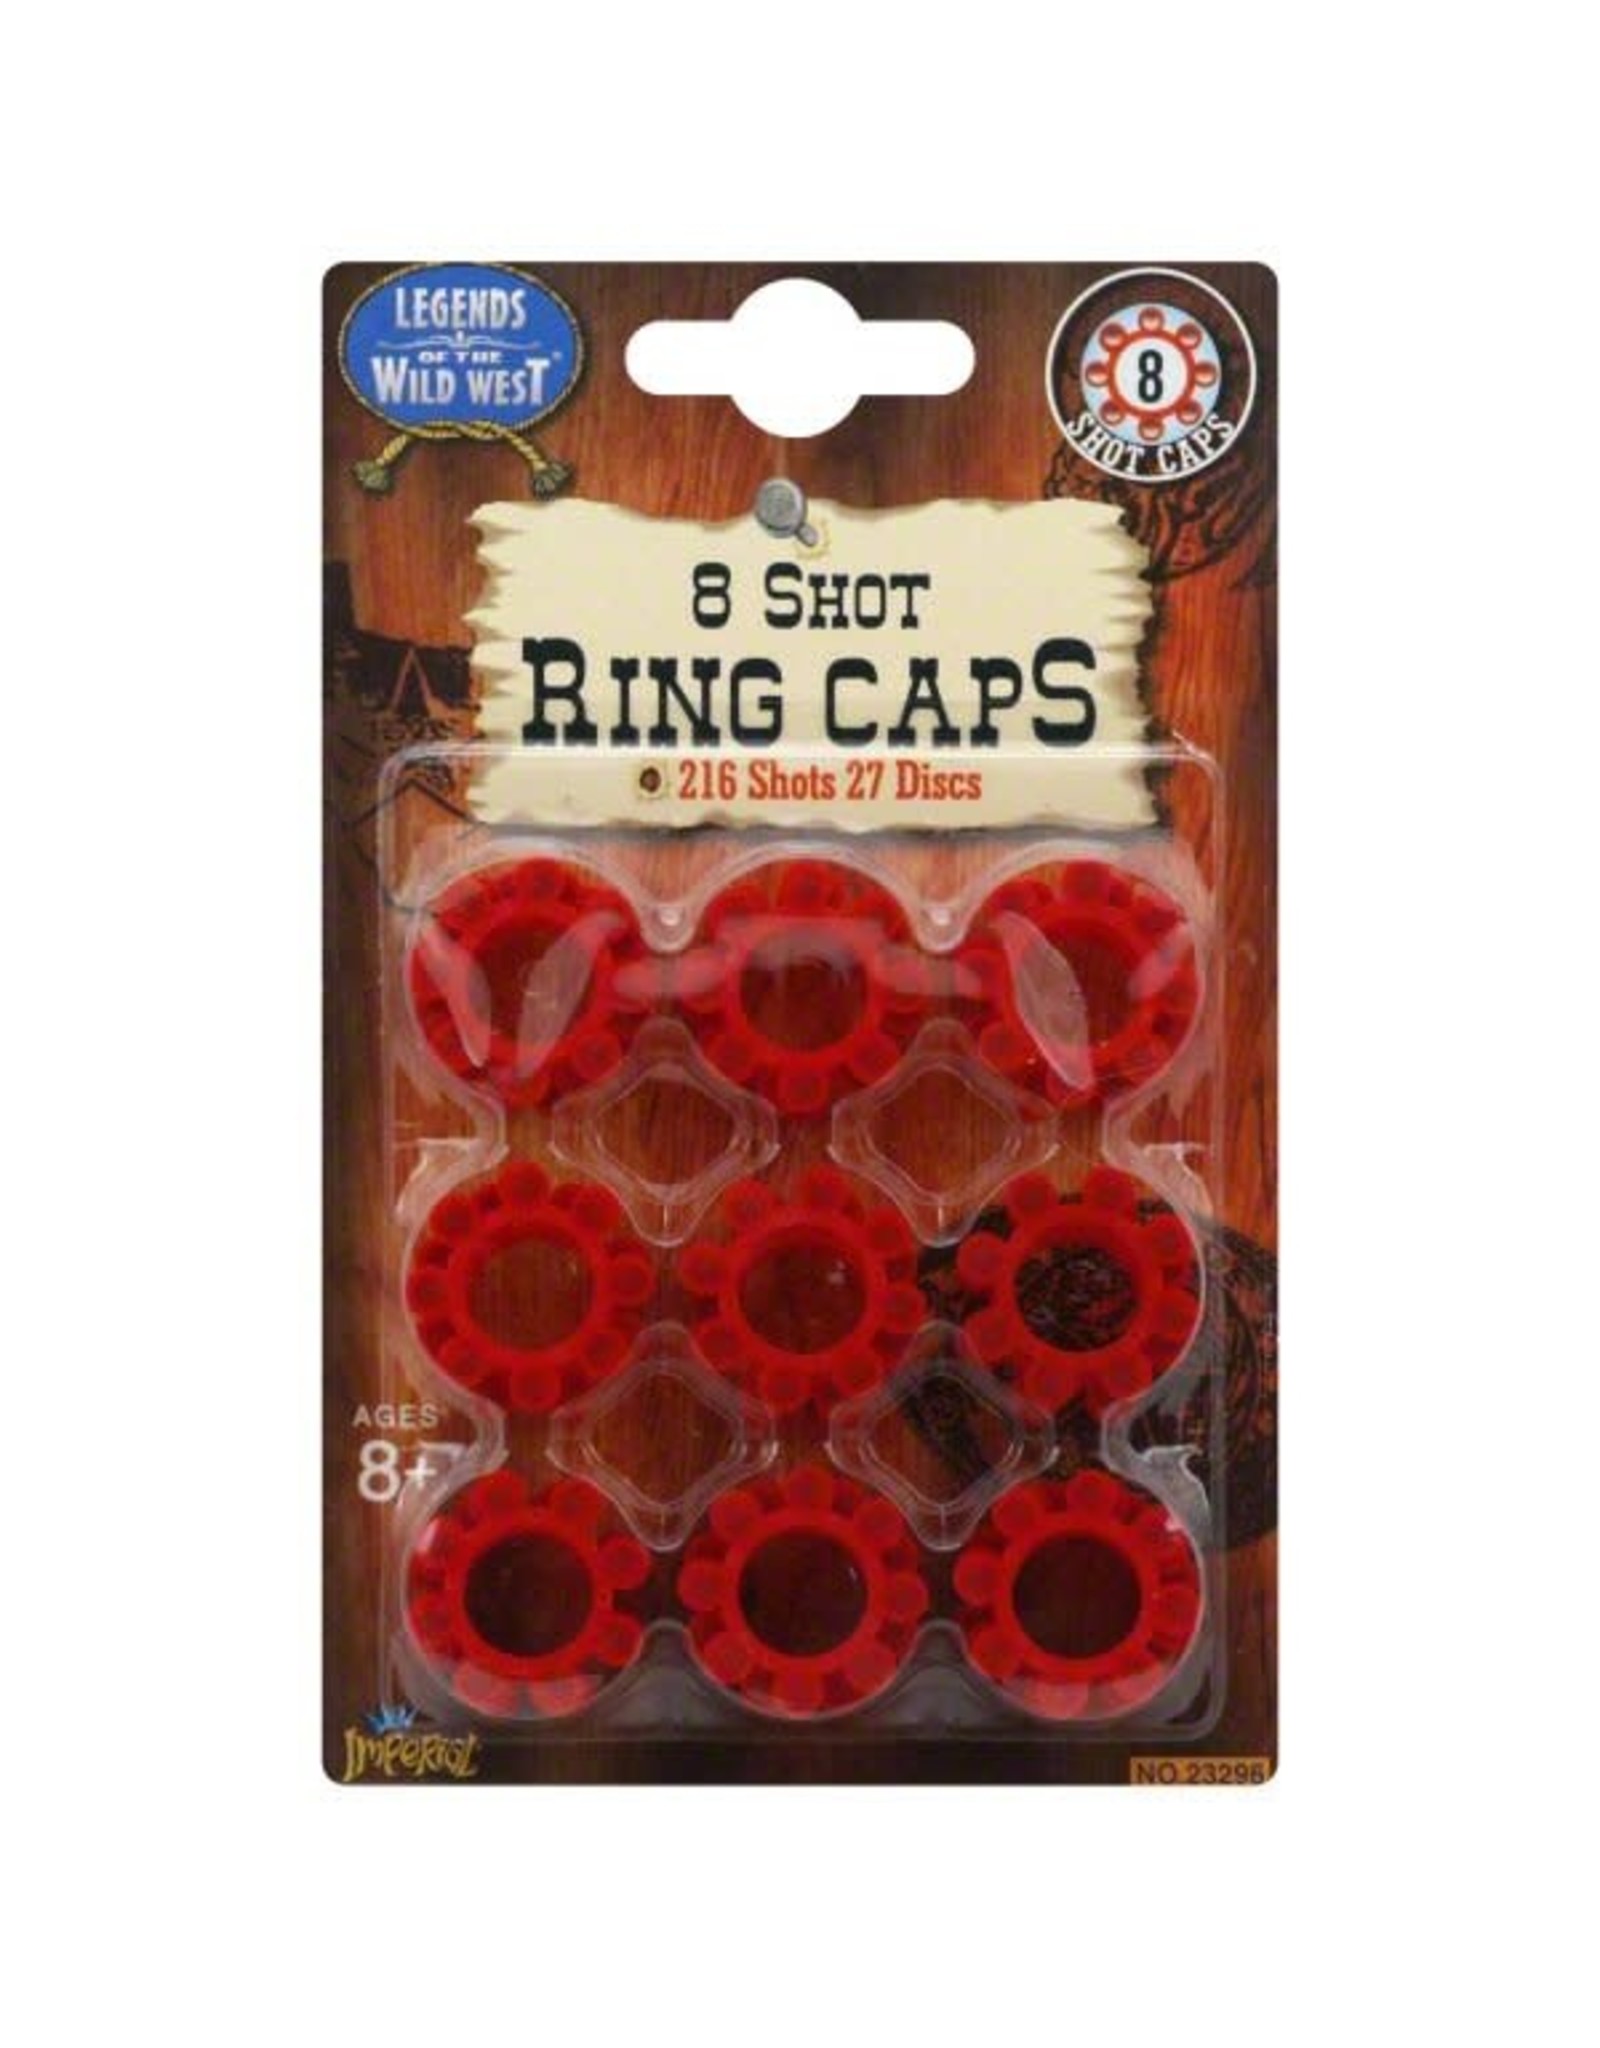 Wild West Ring Caps